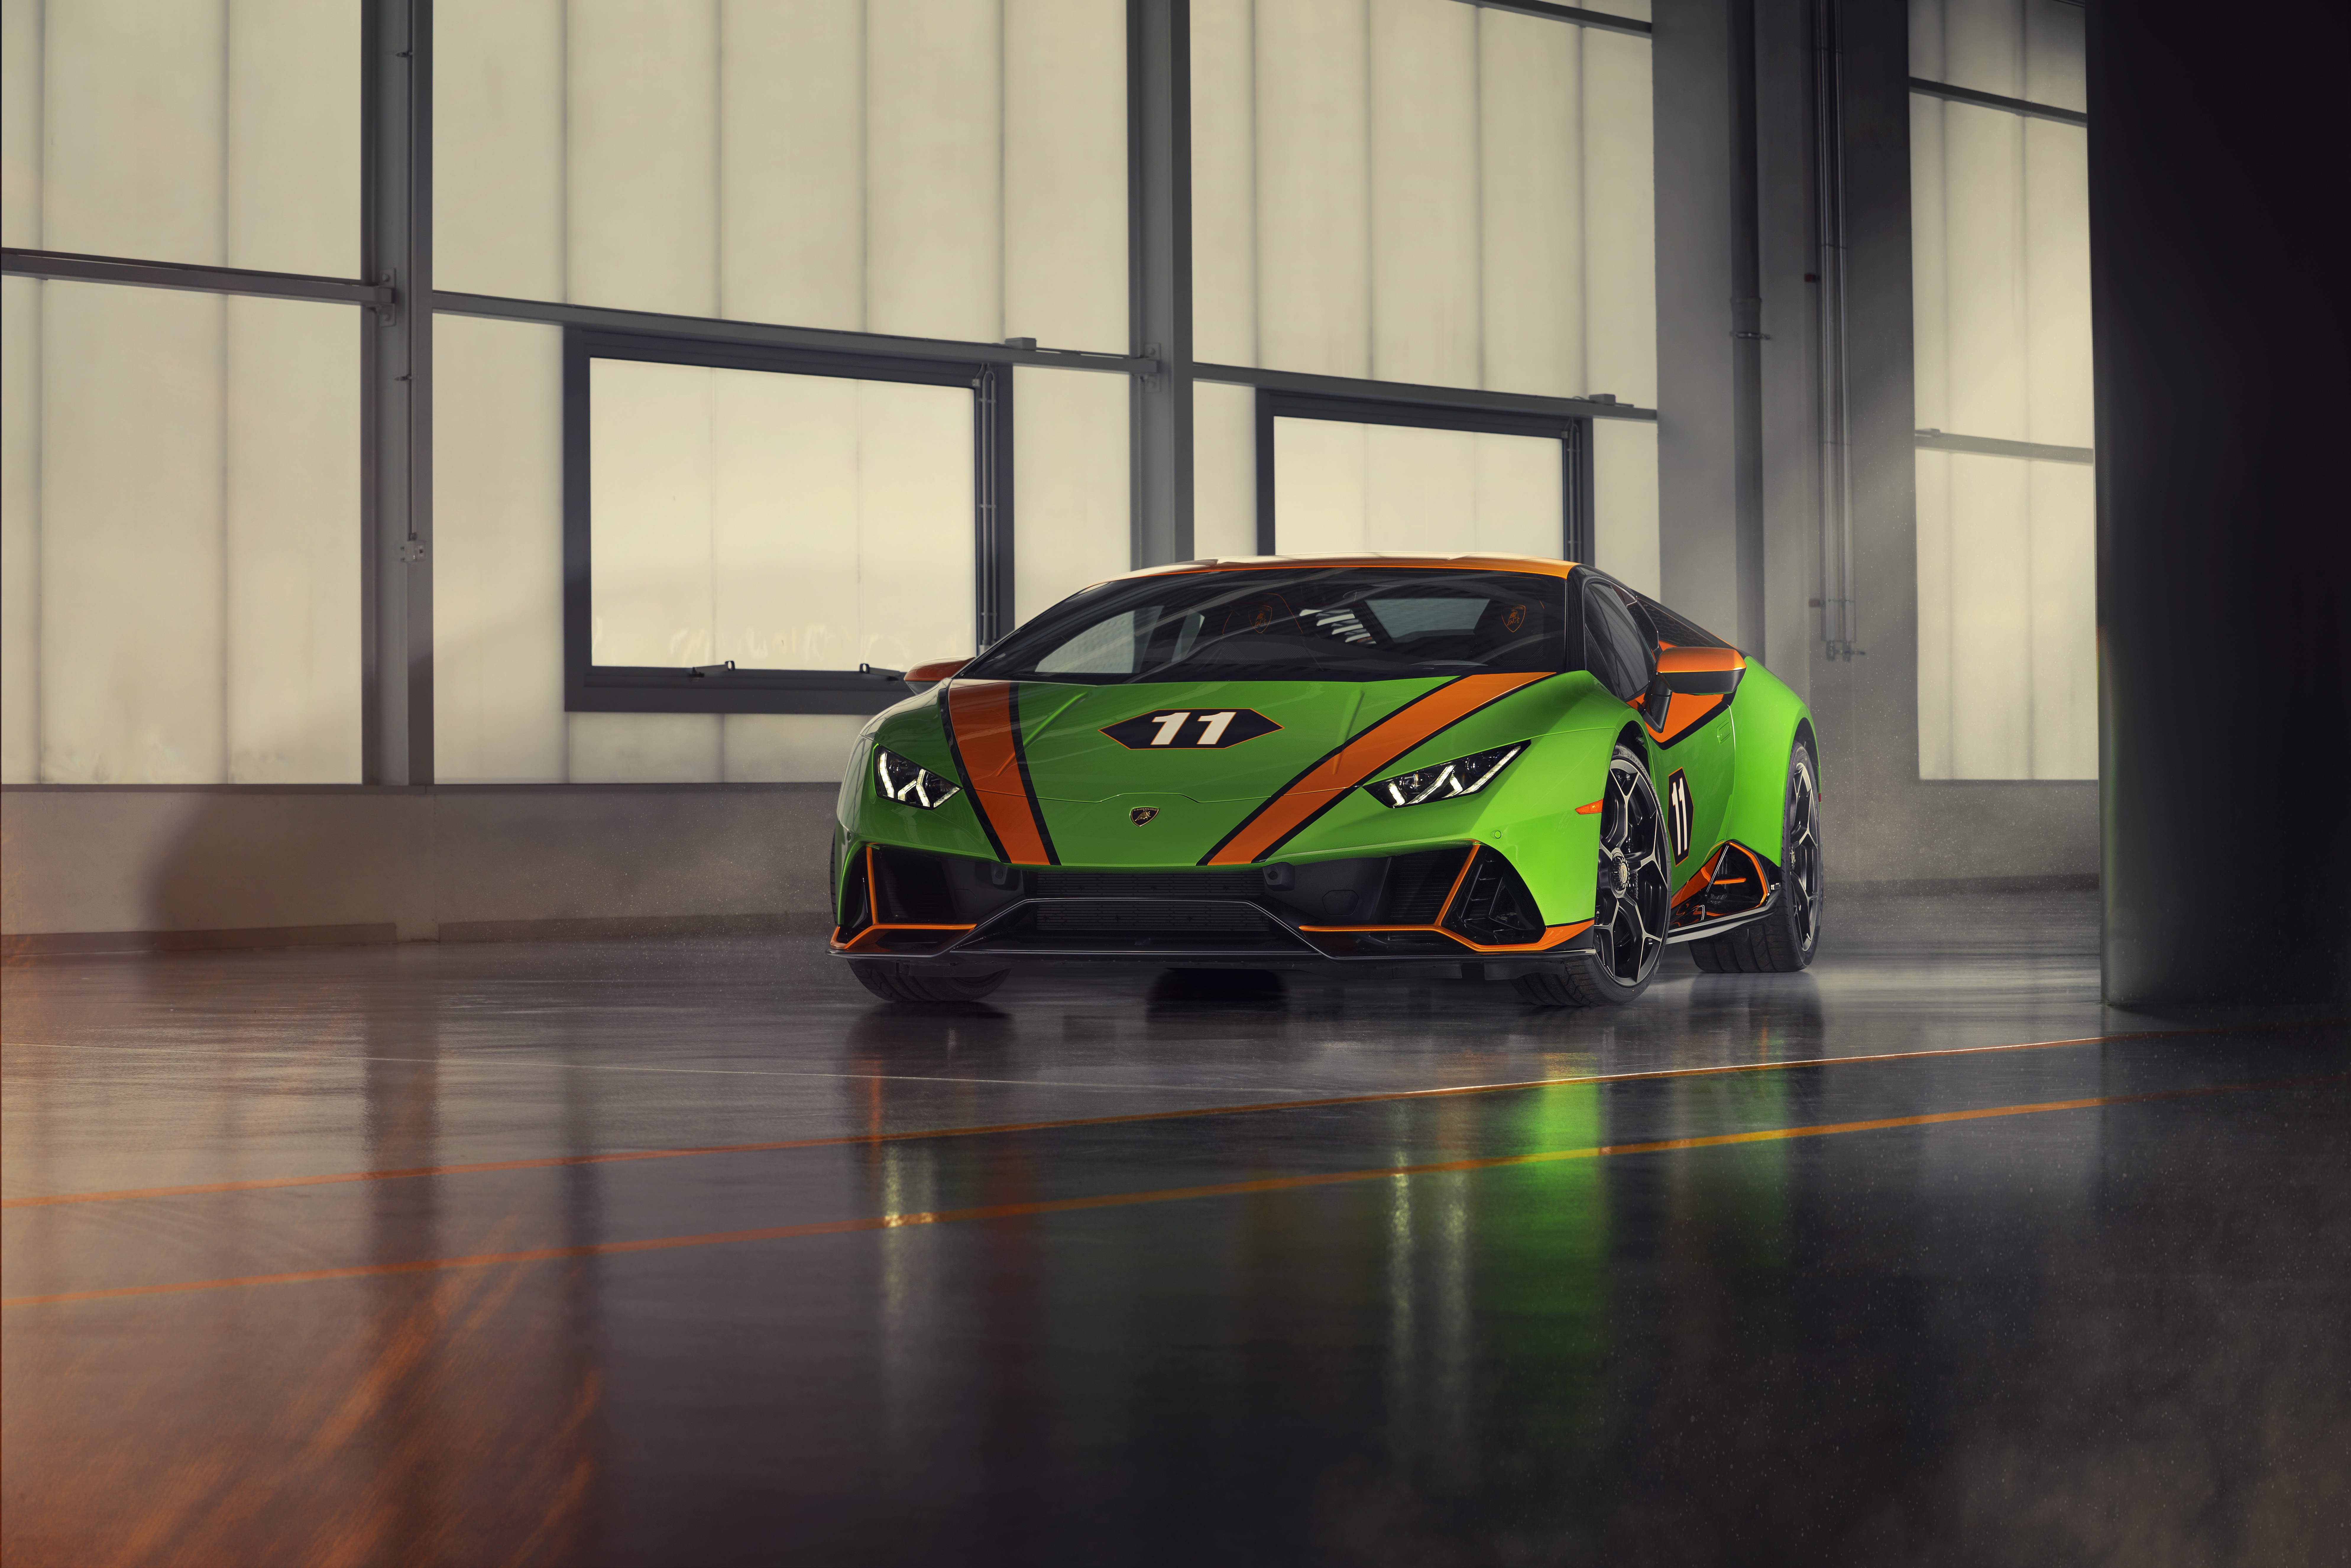 Meilleurs fonds d'écran Célébration De La Lamborghini Huracán Evo Gt pour l'écran du téléphone